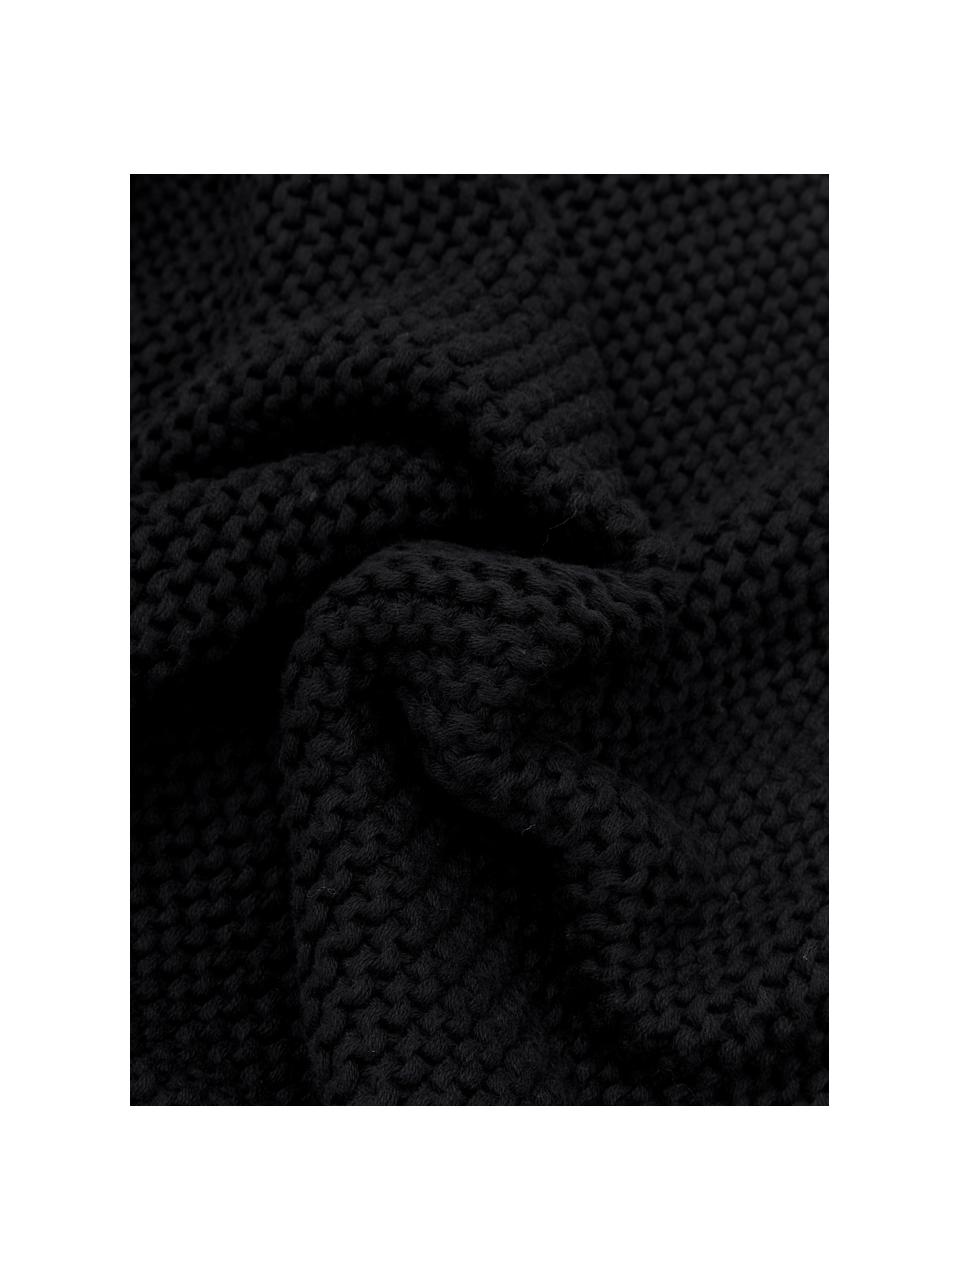 Gebreide kussenhoes Adalyn van biokatoen in zwart, 100% katoen, Zwart, 40 x 40 cm